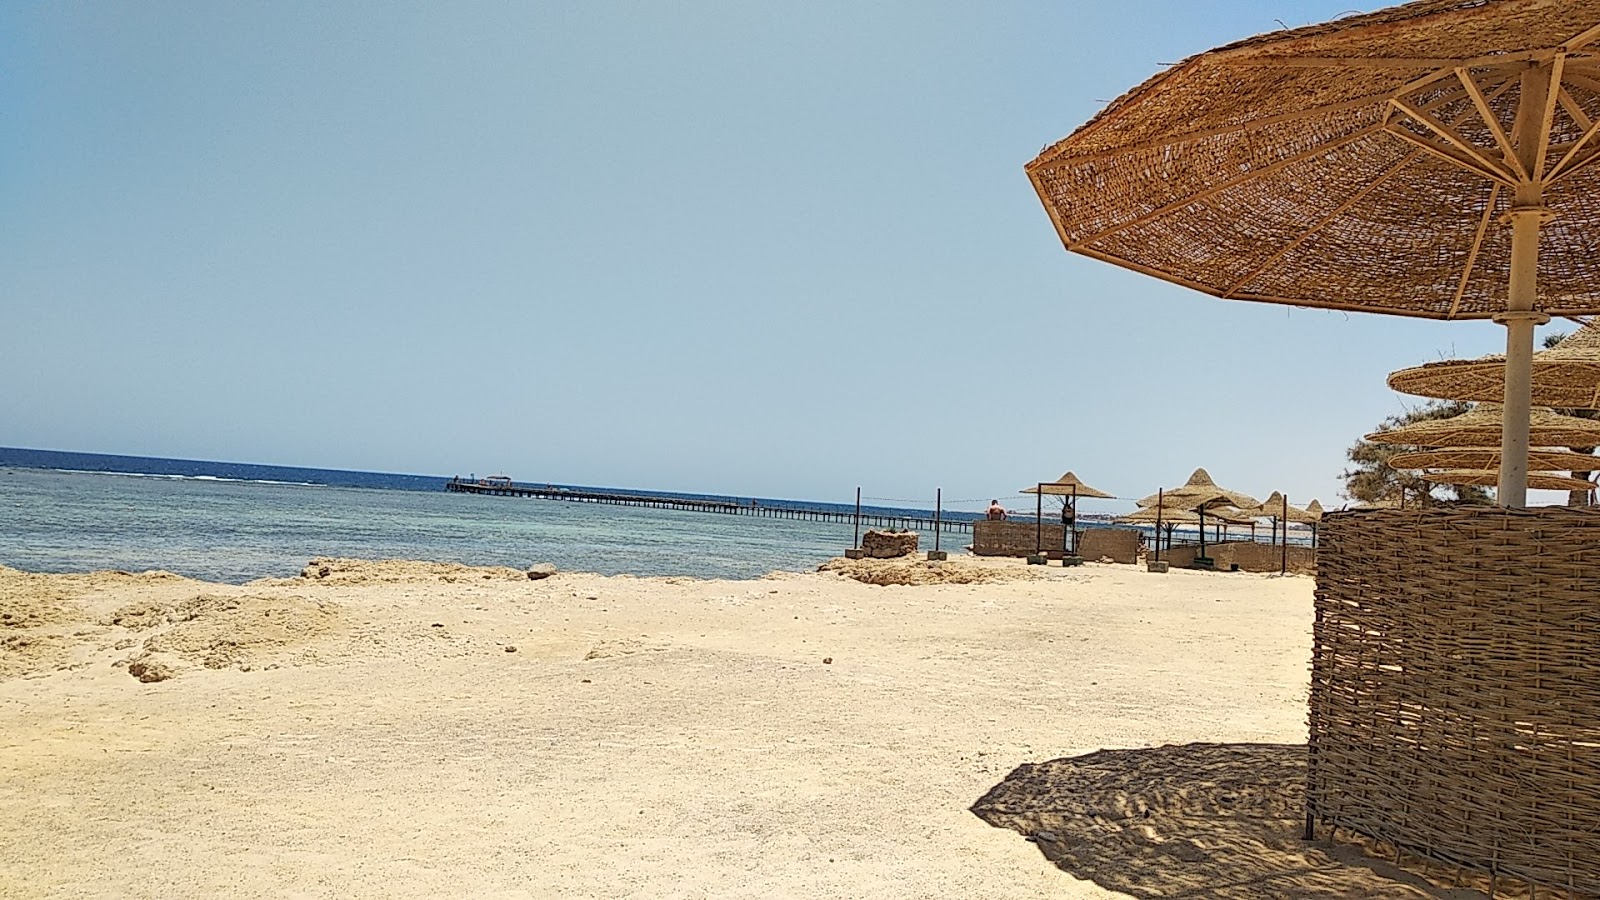 Foto de Flamenco Beach & Resort - lugar popular entre os apreciadores de relaxamento